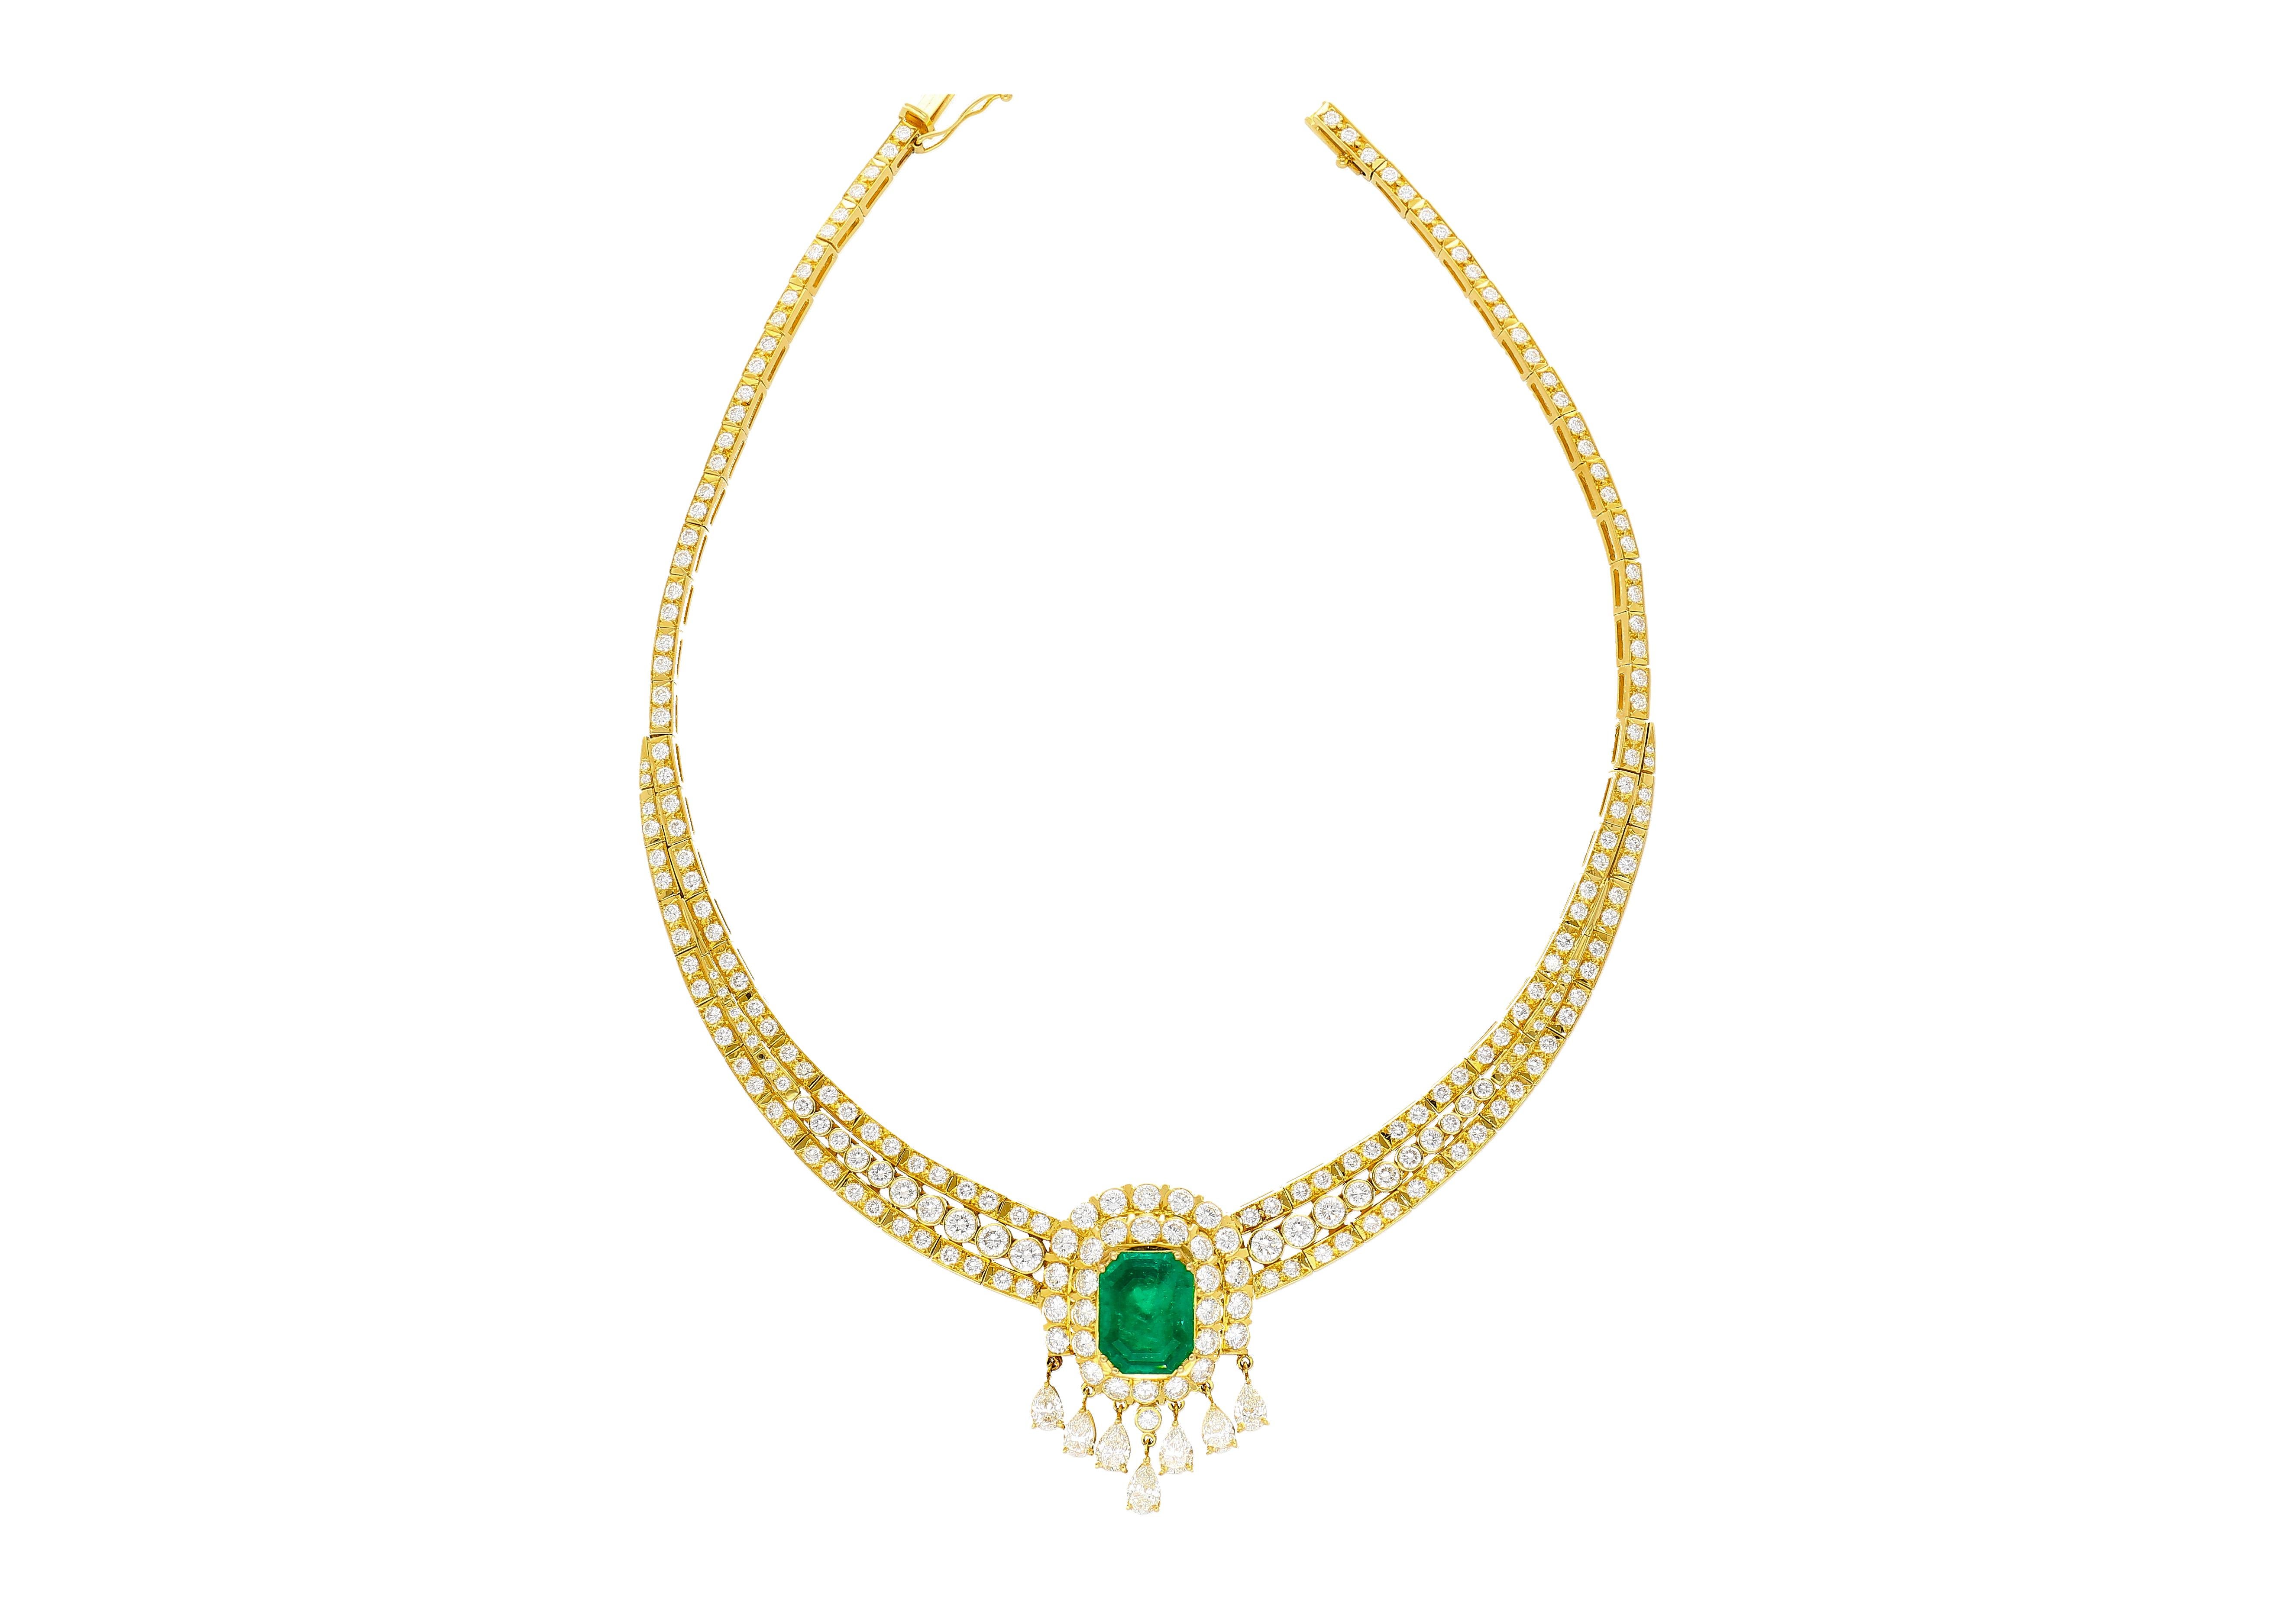 27,42 Karat insgesamt natürlichen kolumbianischen Smaragd und Diamant-Kronleuchter königlichen Design Choker Halskette in 18k massivem Gelbgold. Der Smaragd ist augenrein, voller Leben und hat keine Einschlüsse auf Sruface-Niveau. Unwesentliche